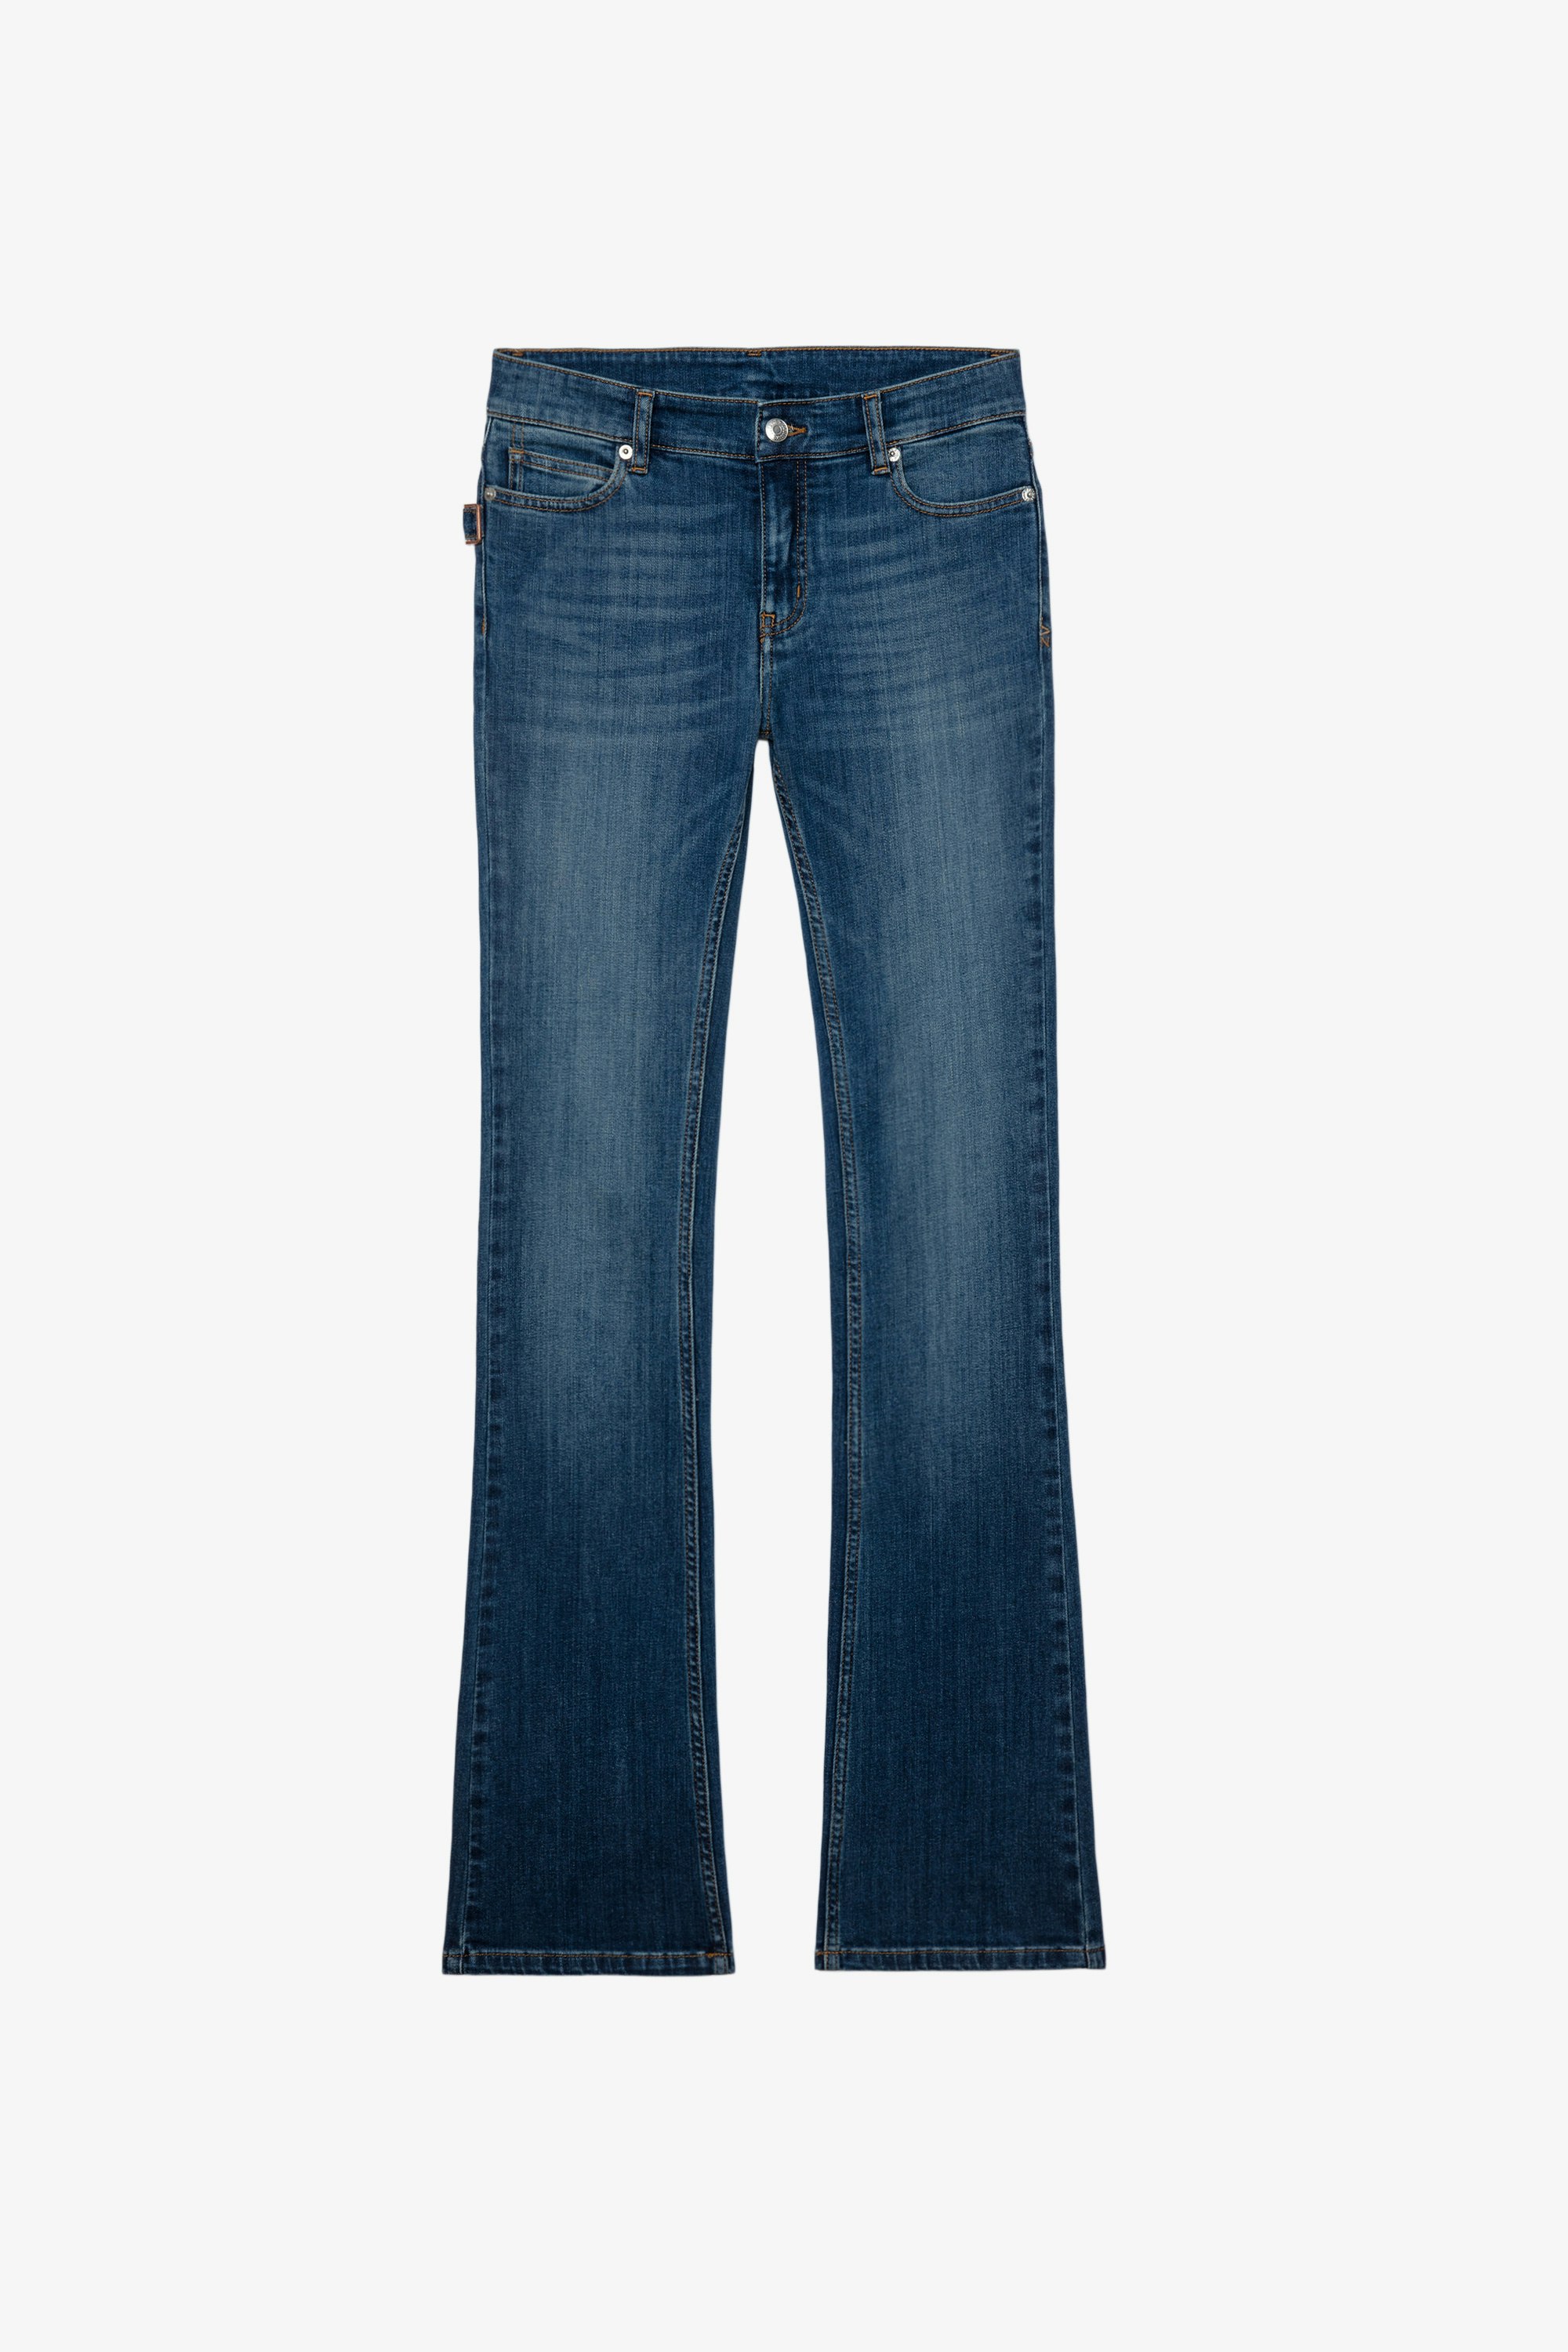 Jean Eclipse Women's blue flared jeans